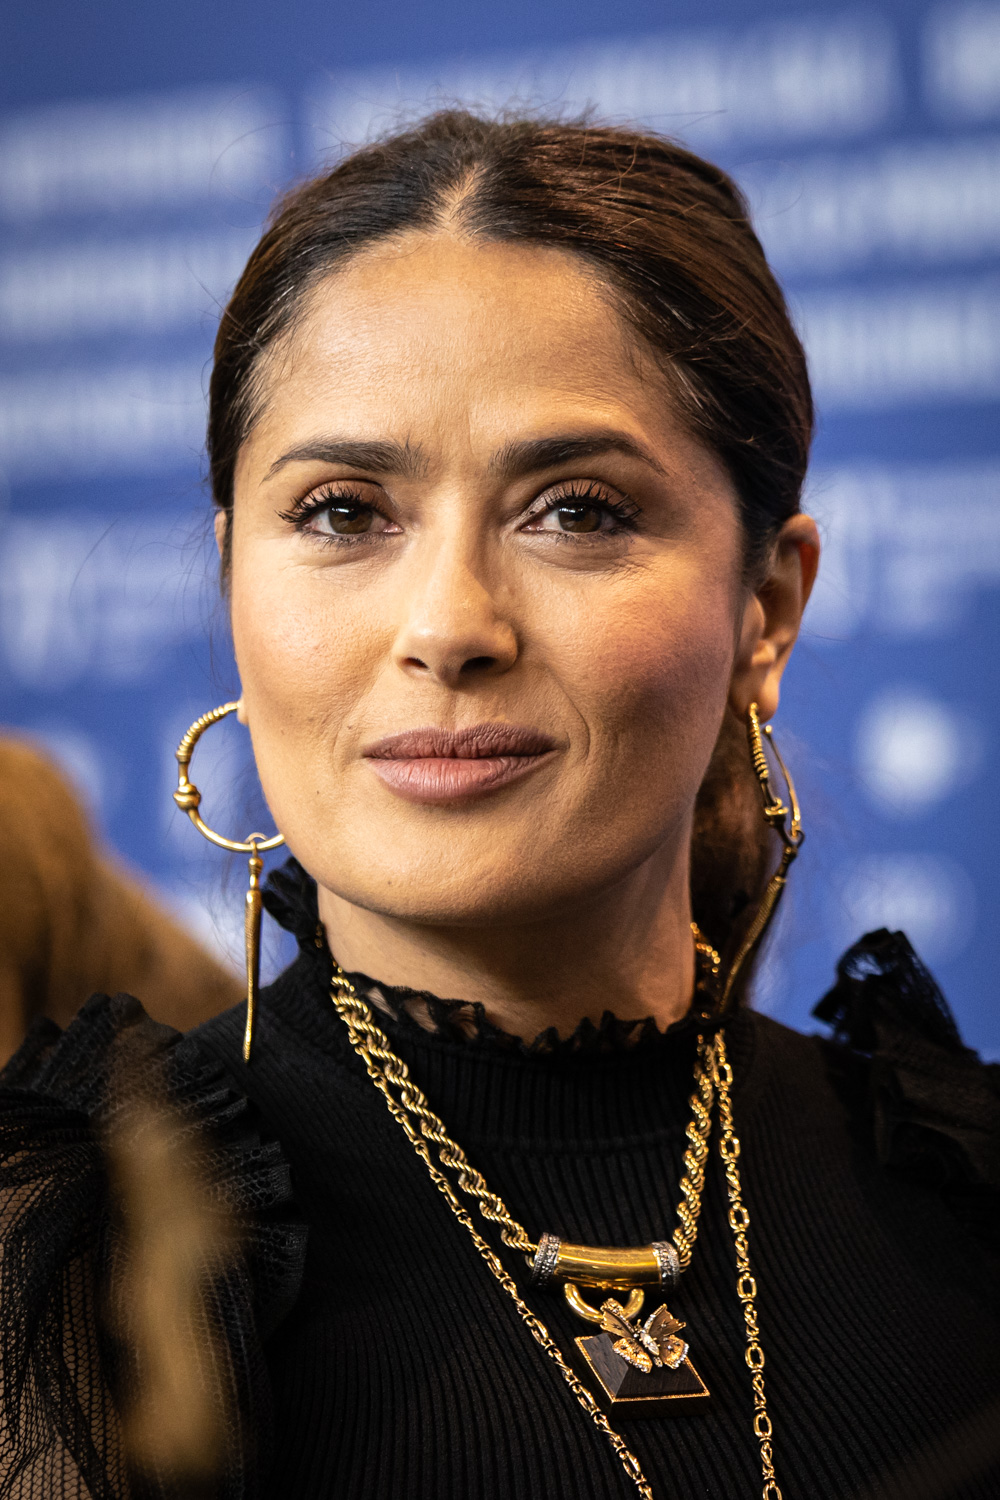 Salma Hayek - Wikipedia